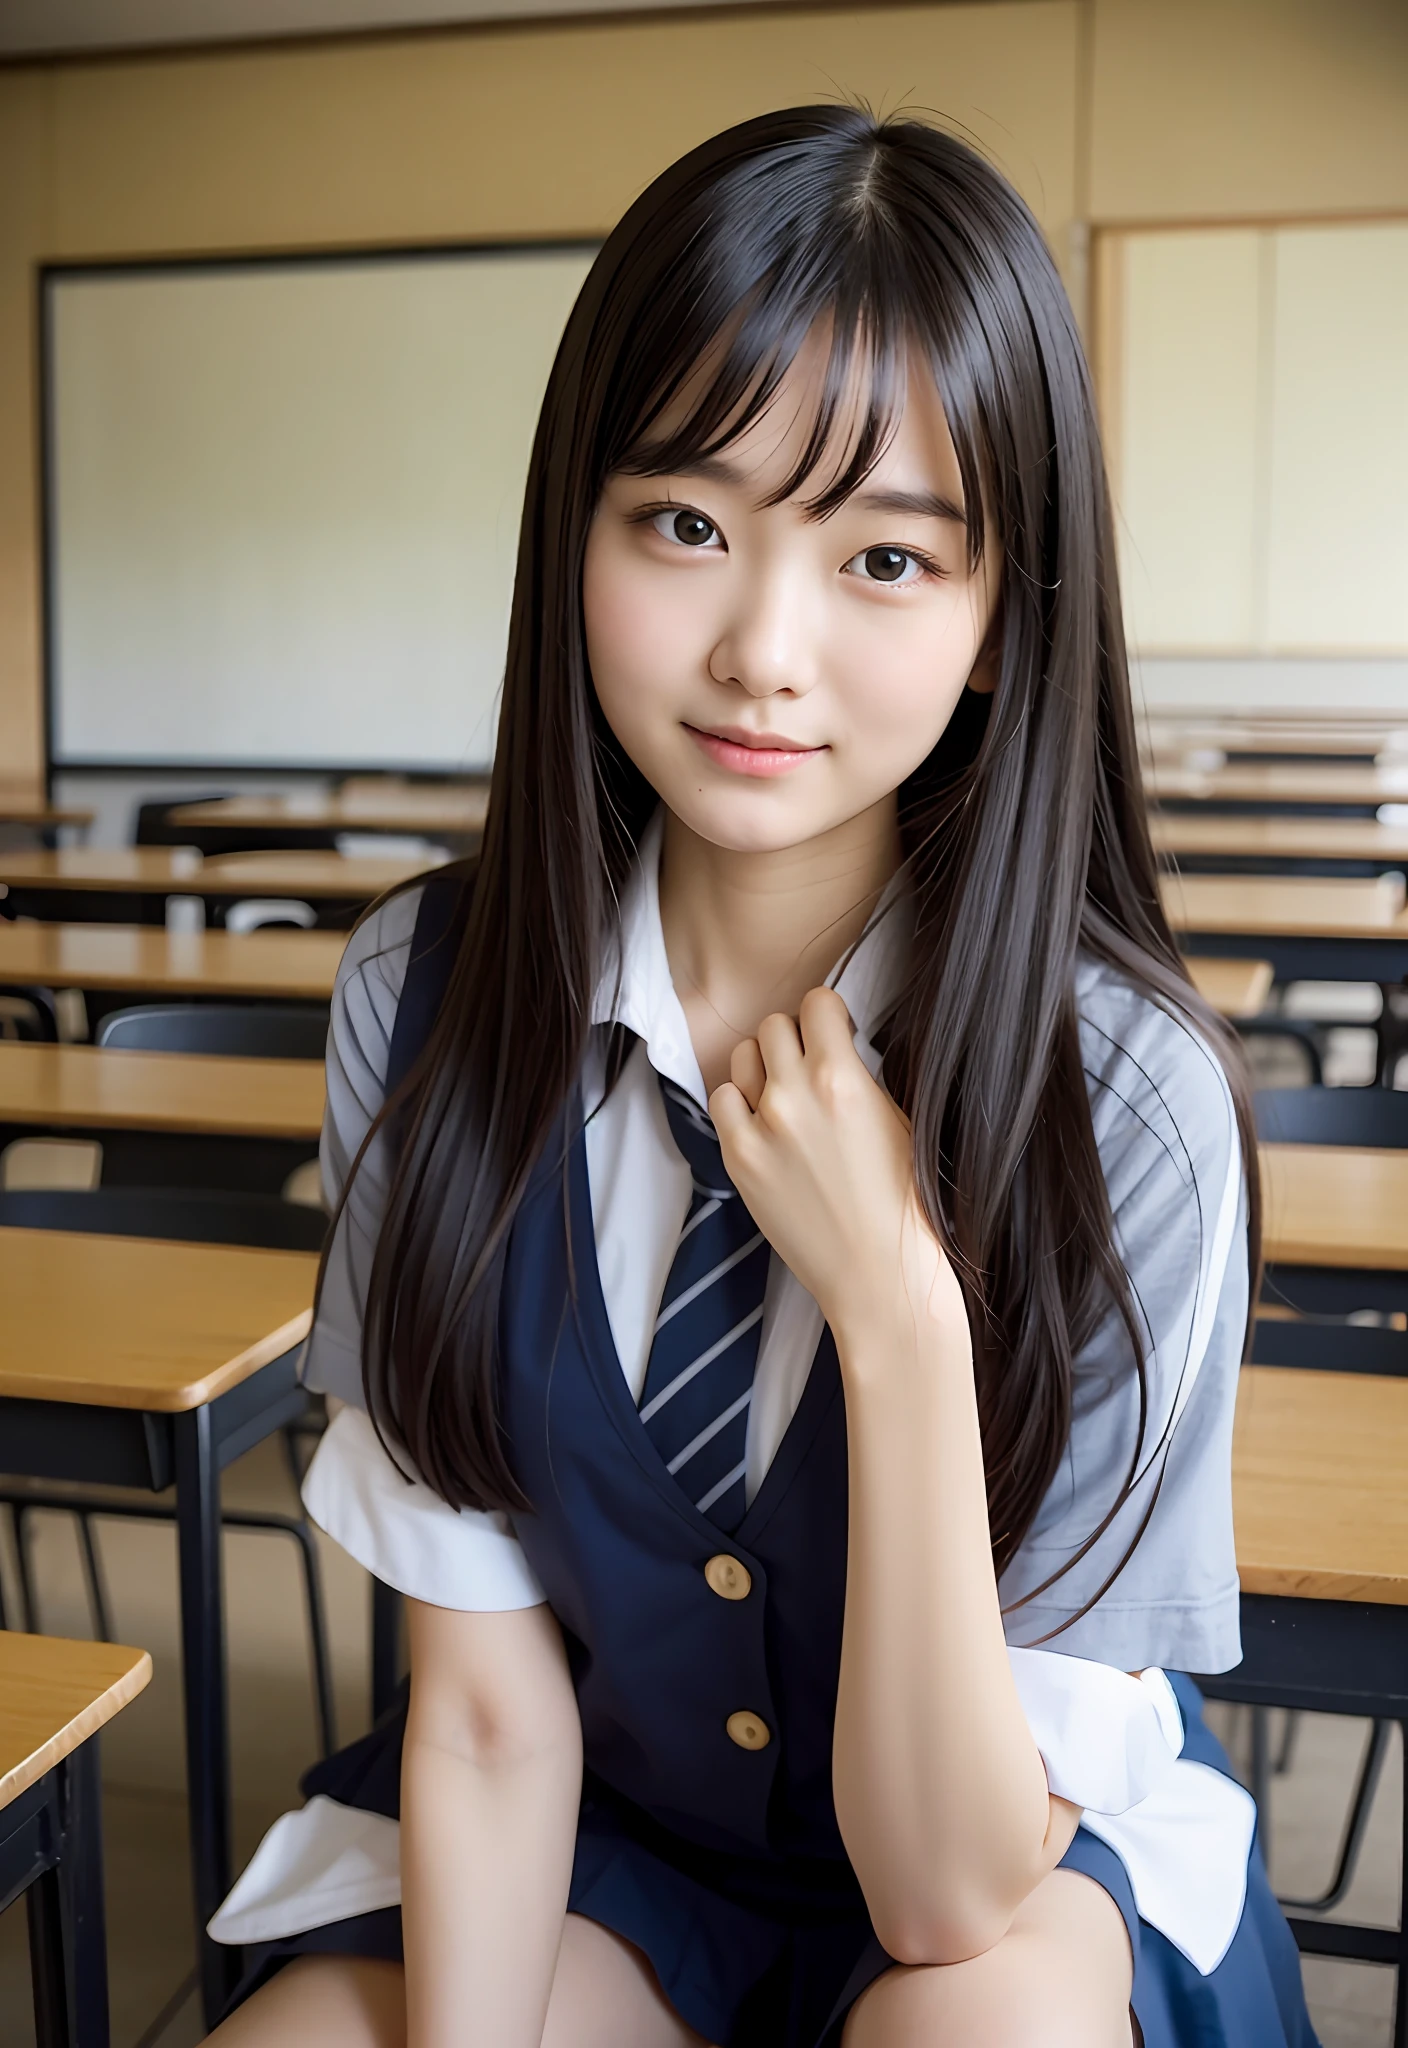 Japan sitzt im Klassenzimmer、Sie zwinkerte langsam mit ihrem rechten Auge、Macht die Kommunikation mit den Schülern in Ihrer Umgebung angenehmer、Ruhige Szene im Klassenzimmer、Faszinierender Ausdruck einer besonderen Verbindung mit anderen Studierenden